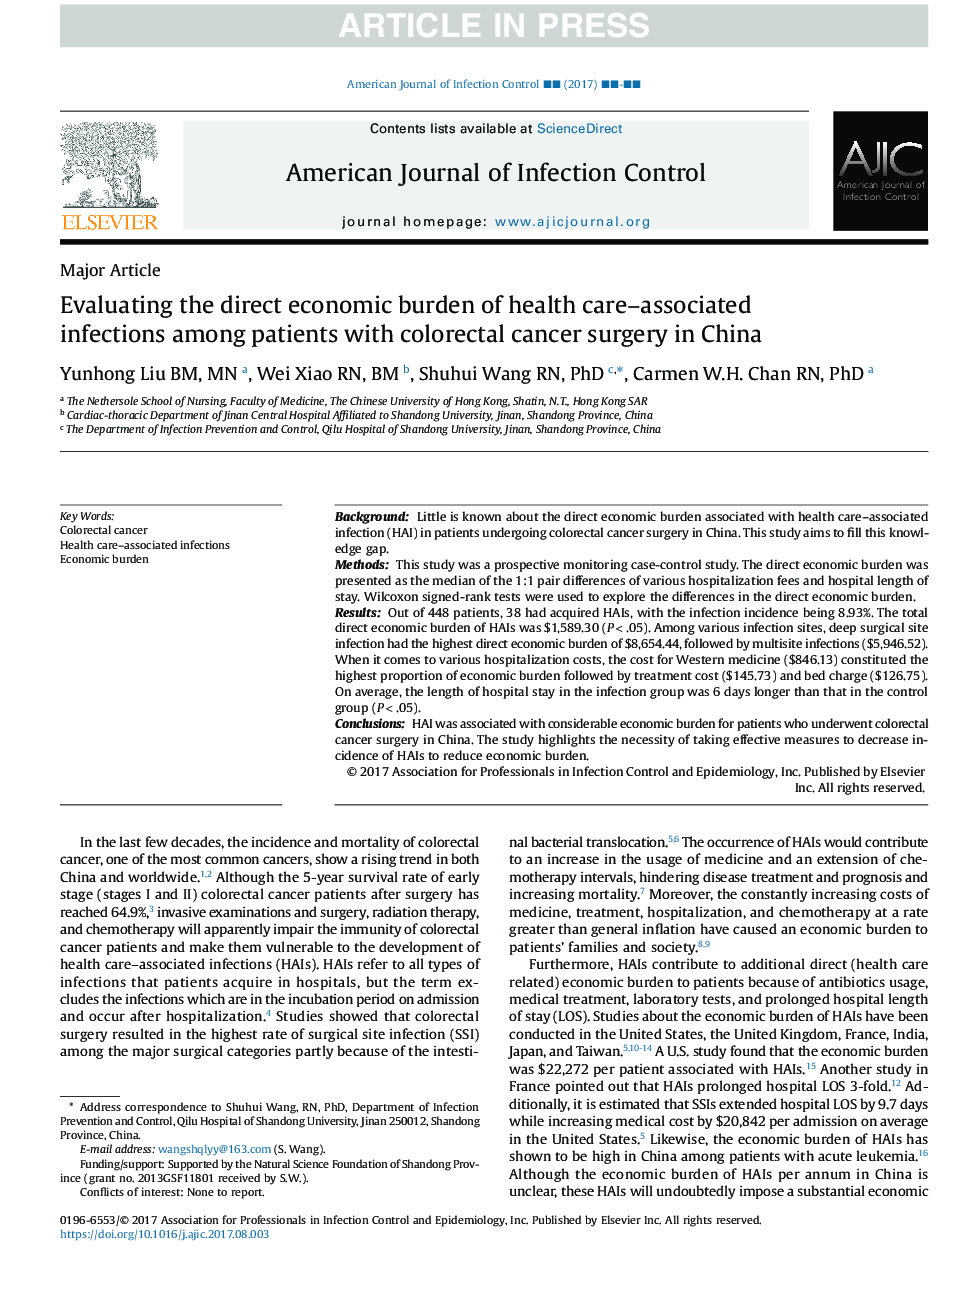 ارزیابی بار اقتصادی عفونت های مرتبط با مراقبت های بهداشتی در میان بیماران مبتلا به جراحی سرطان کولورکتال در چین 